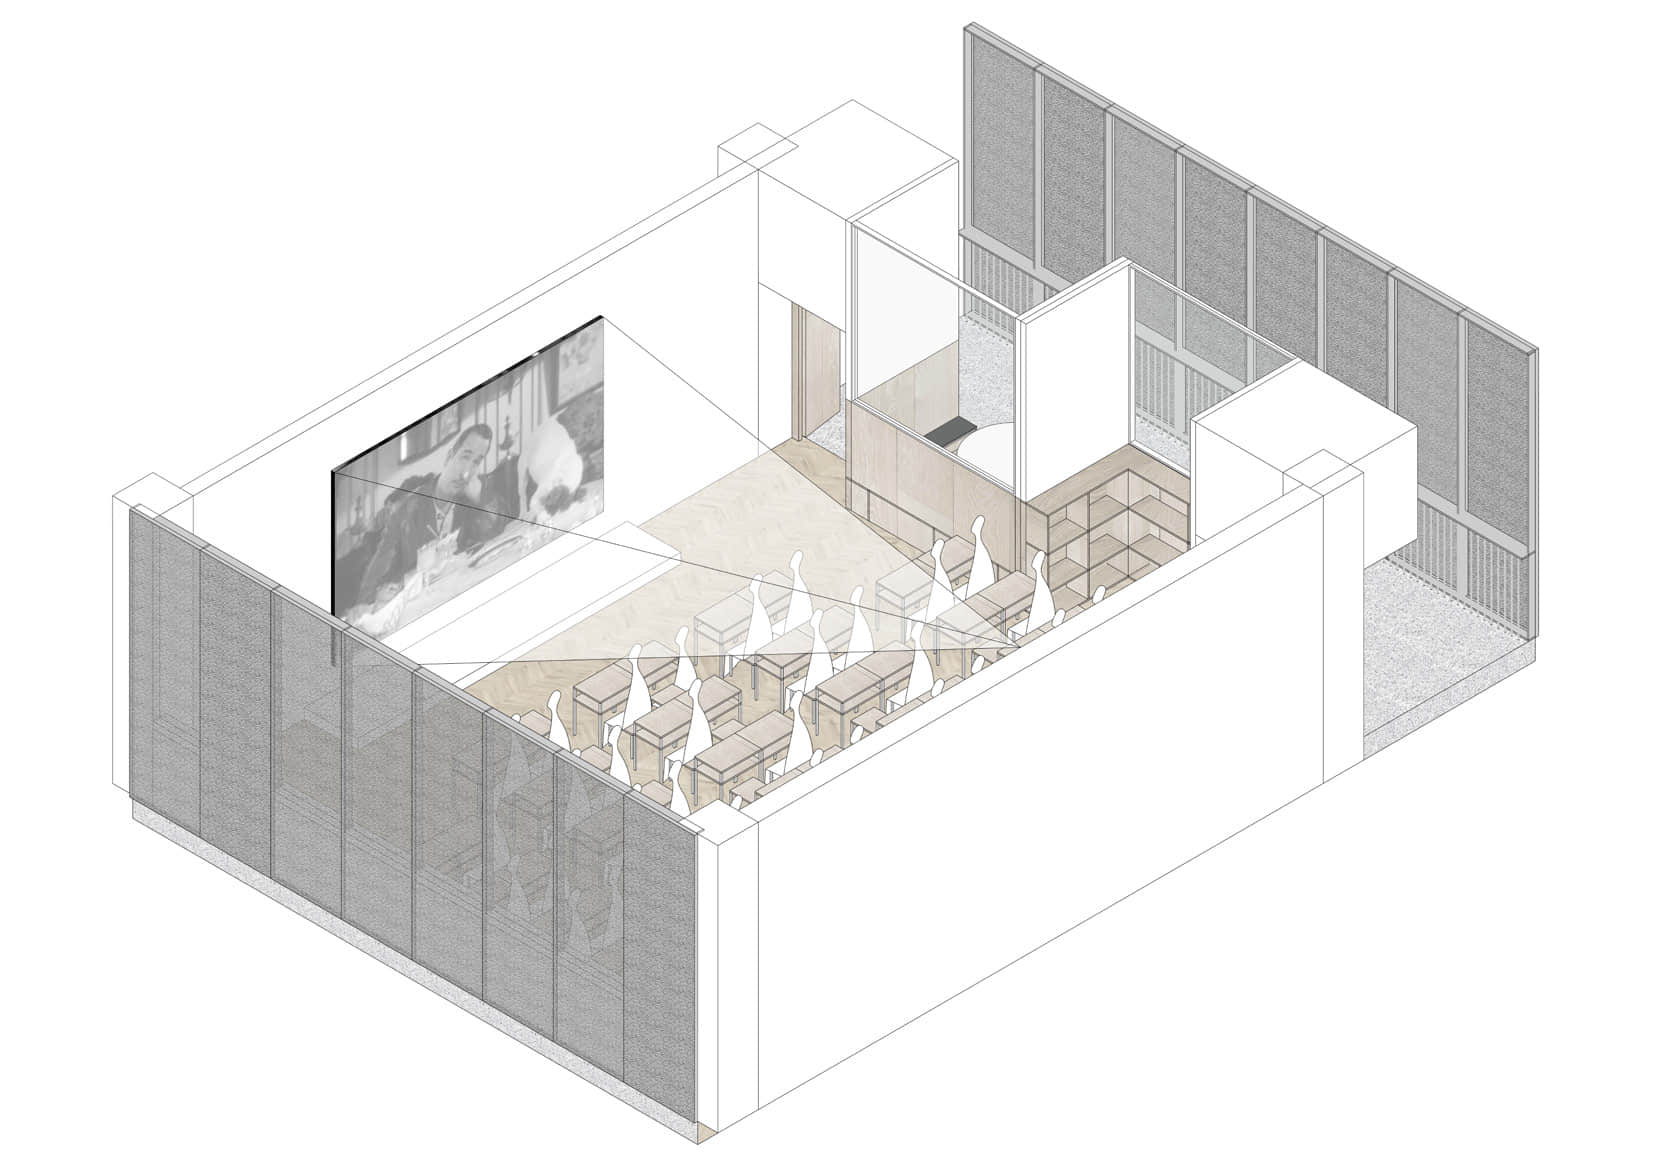 图34.投影教学场景 - 临界建筑的福田中学中标案对教室的三种使用状态的轴测示意图